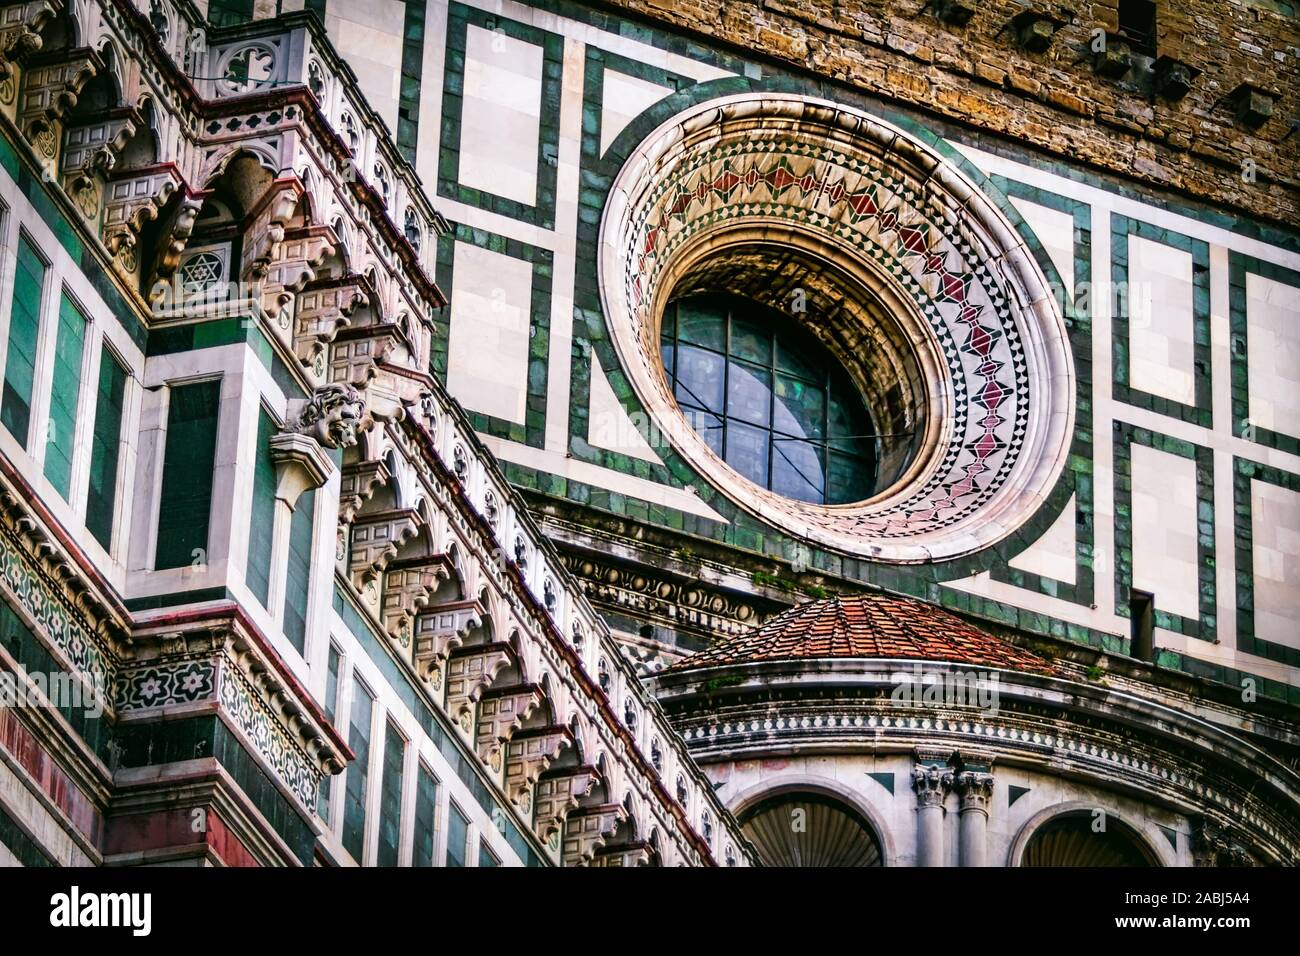 Die gotische Fassade des Doms in Florenz, Italien. Stockfoto